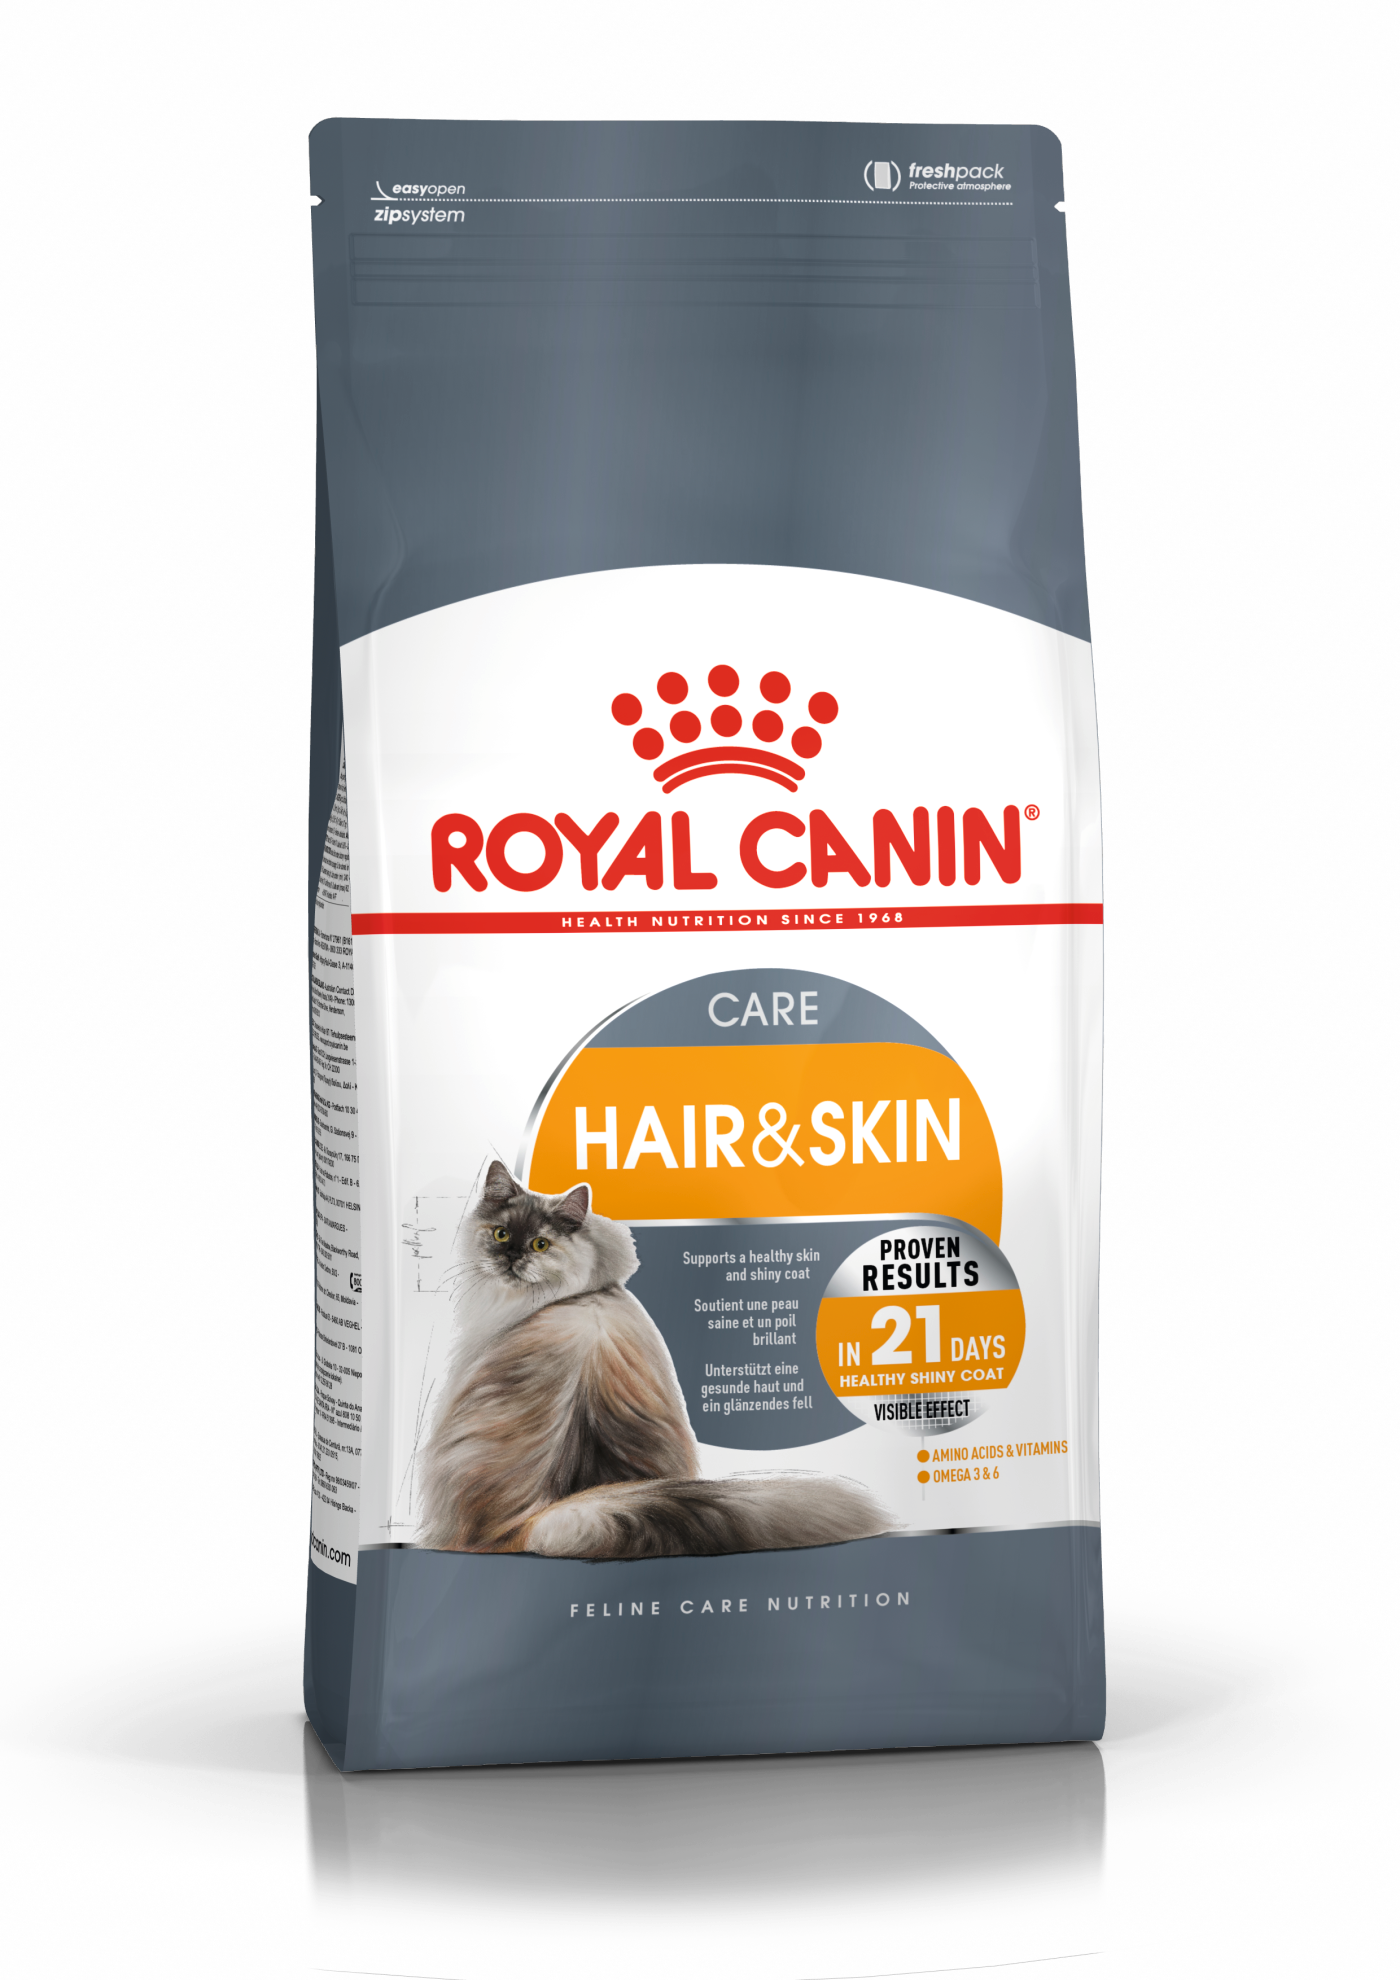 Hair & Skin Care | Royal Canin Shop